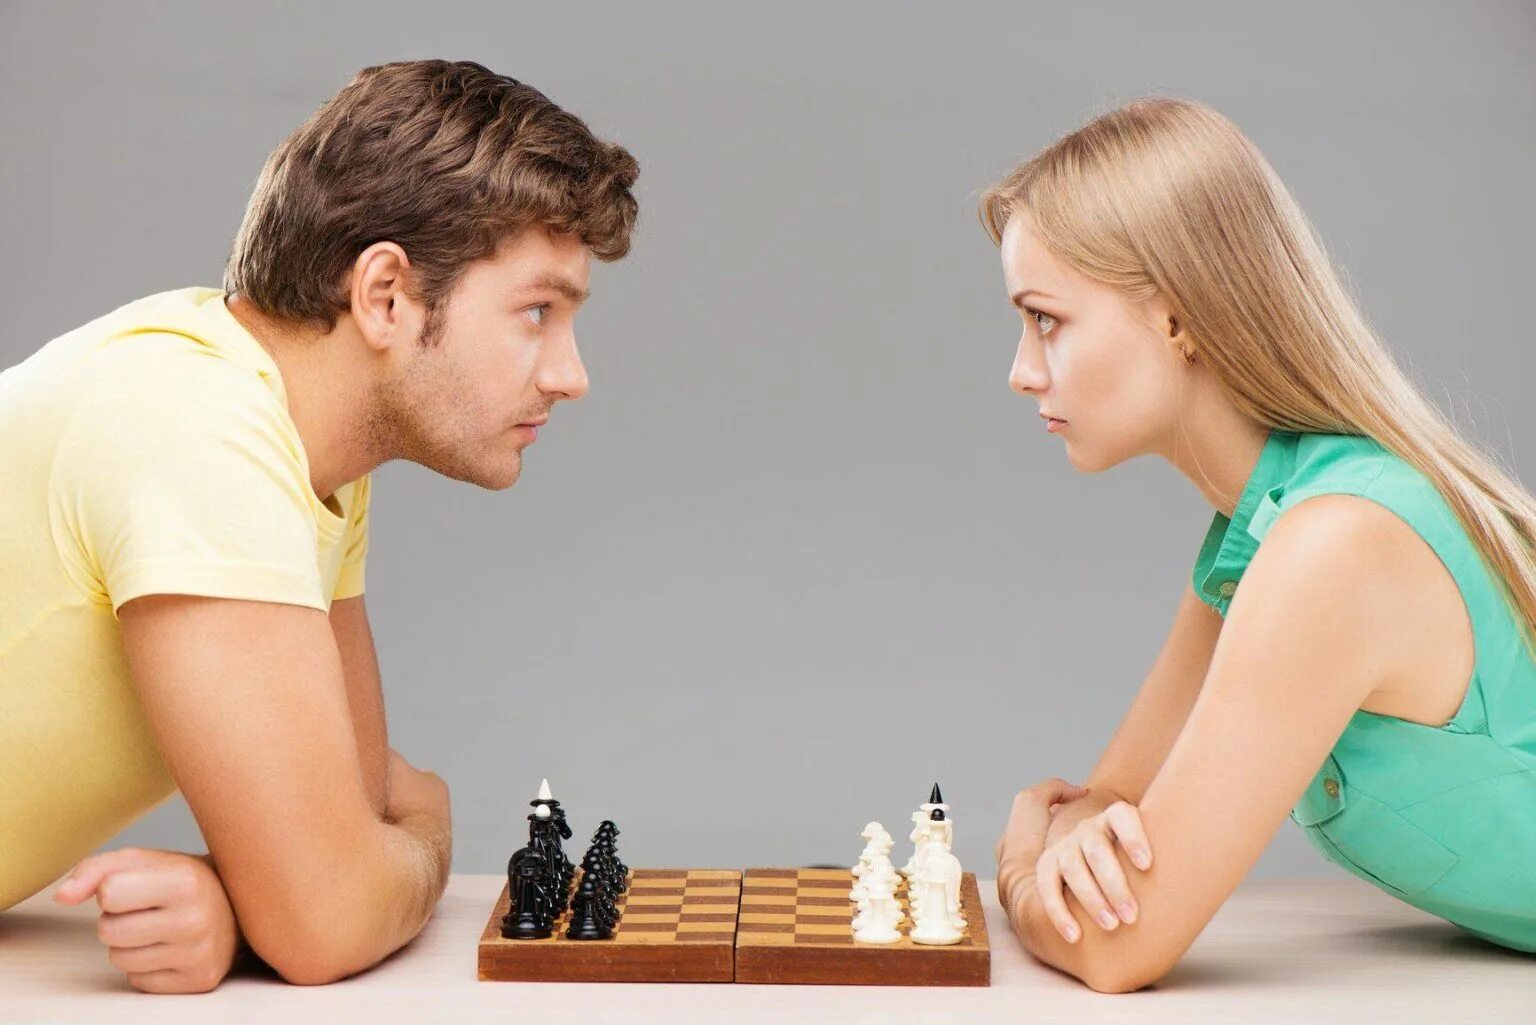 Игры между друзьями. Мужчина и женщина. Отношения между мужчиной и женщиной. Взаимоотношения мужчины и женщины. Компромисс в отношениях.